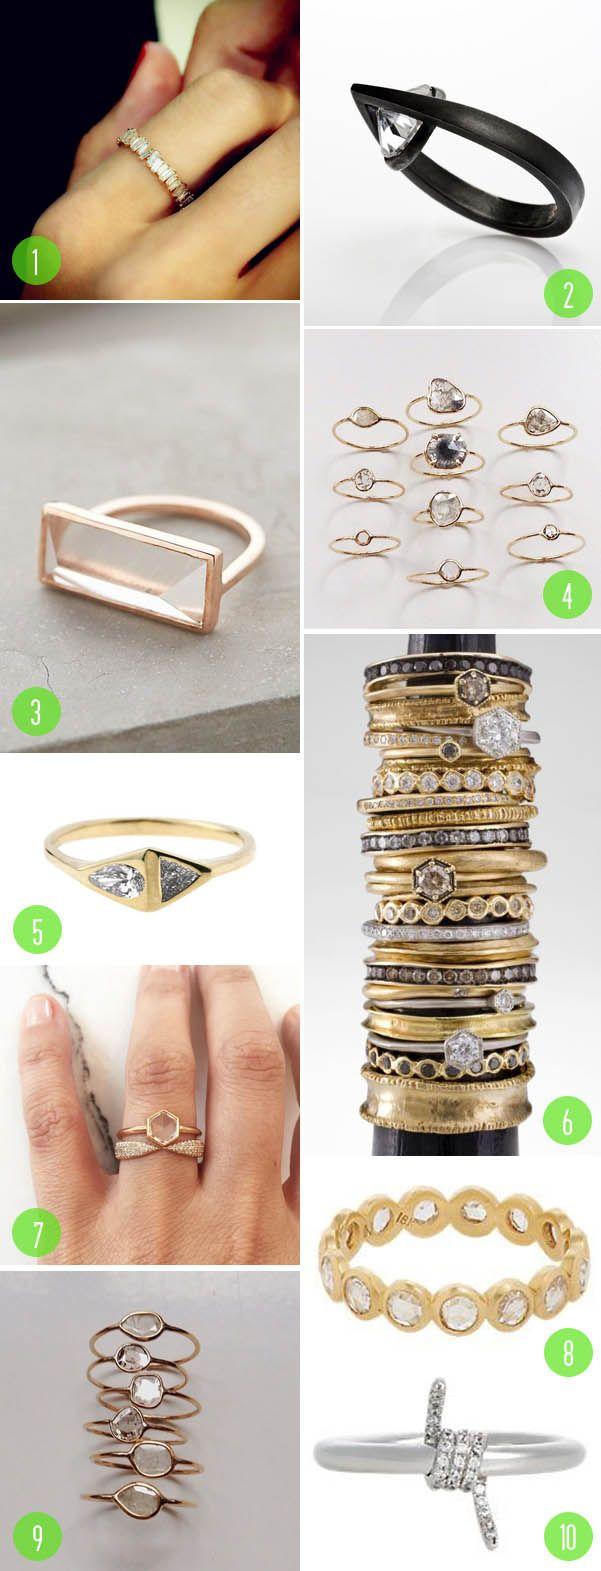 زفاف - Top 10: Rings